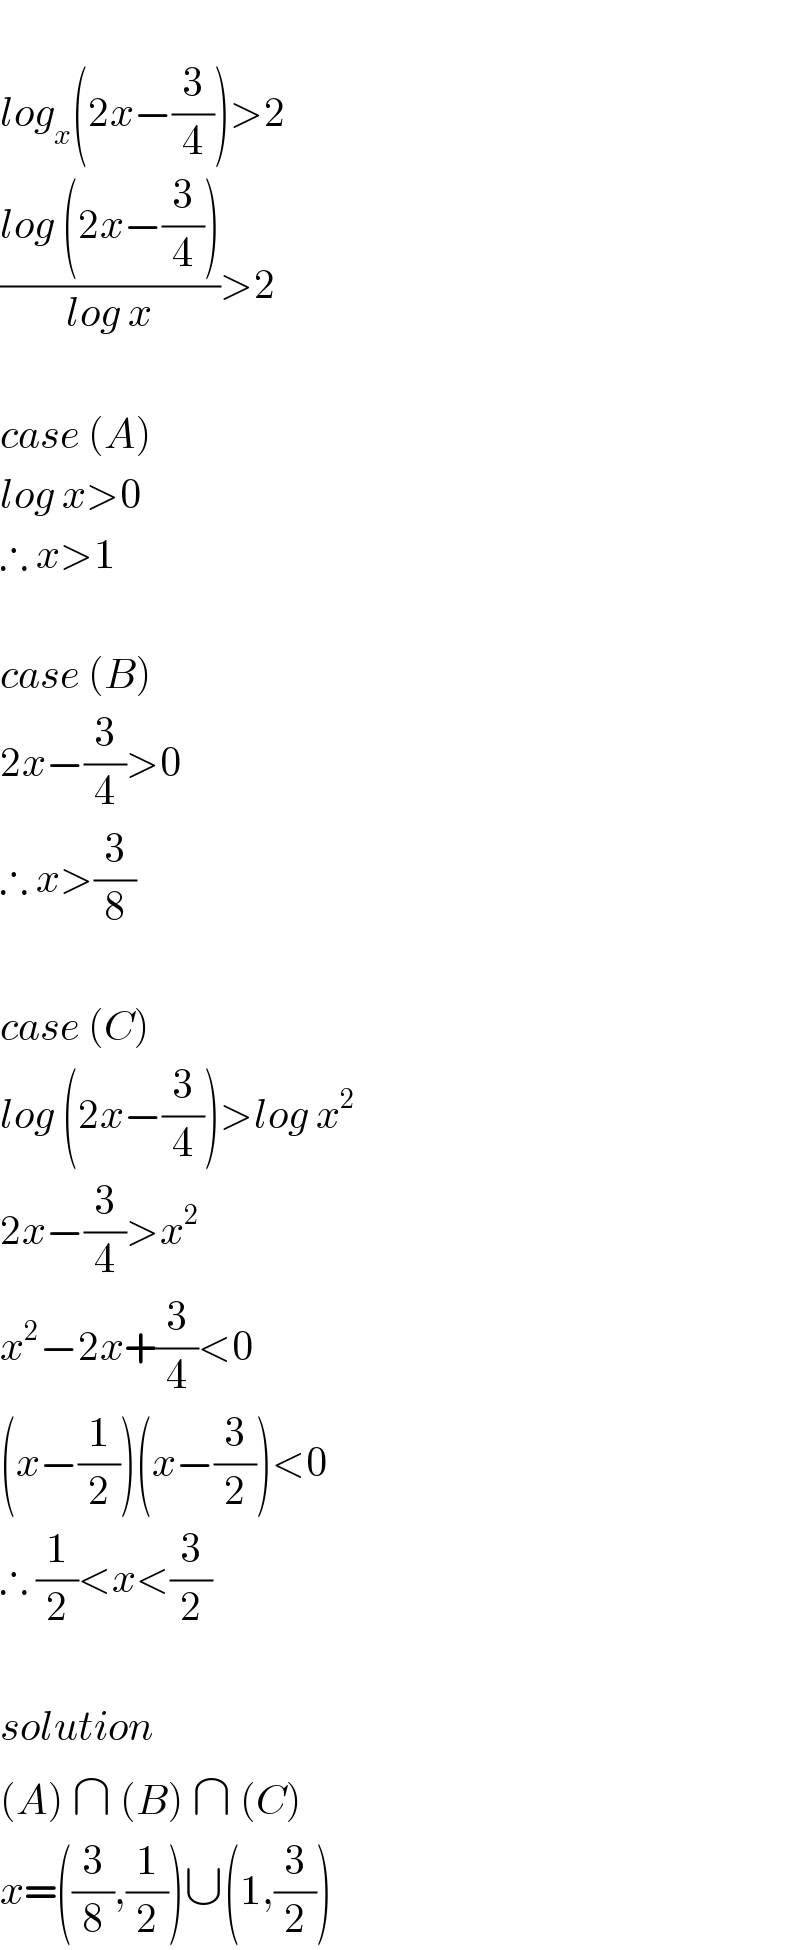   log_x (2x−(3/4))>2  ((log (2x−(3/4)))/(log x))>2    case (A)  log x>0  ∴ x>1    case (B)  2x−(3/4)>0  ∴ x>(3/8)    case (C)  log (2x−(3/4))>log x^2   2x−(3/4)>x^2   x^2 −2x+(3/4)<0  (x−(1/2))(x−(3/2))<0  ∴ (1/2)<x<(3/2)    solution  (A) ∩ (B) ∩ (C)  x=((3/8),(1/2))∪(1,(3/2))  